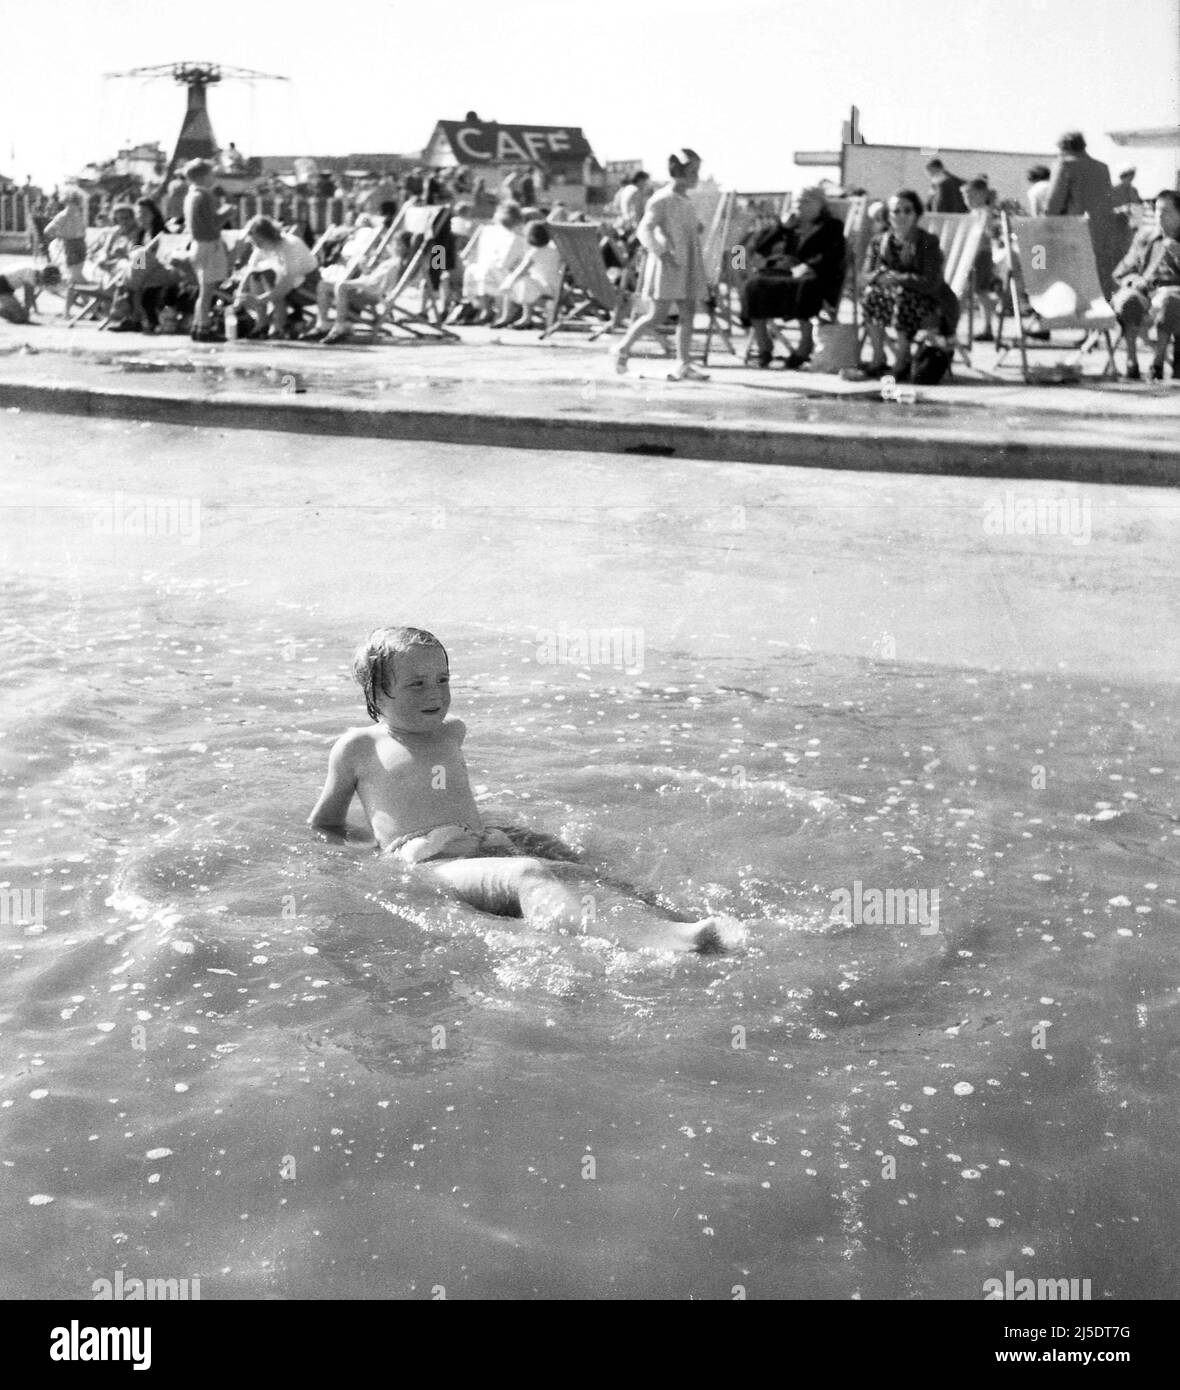 1960, historique, une petite fille couchée dans des eaux peu profondes à un Lido extérieur, avec des personnes assises dans des chaises longues sur le côté, Angleterre, Royaume-Uni. Banque D'Images